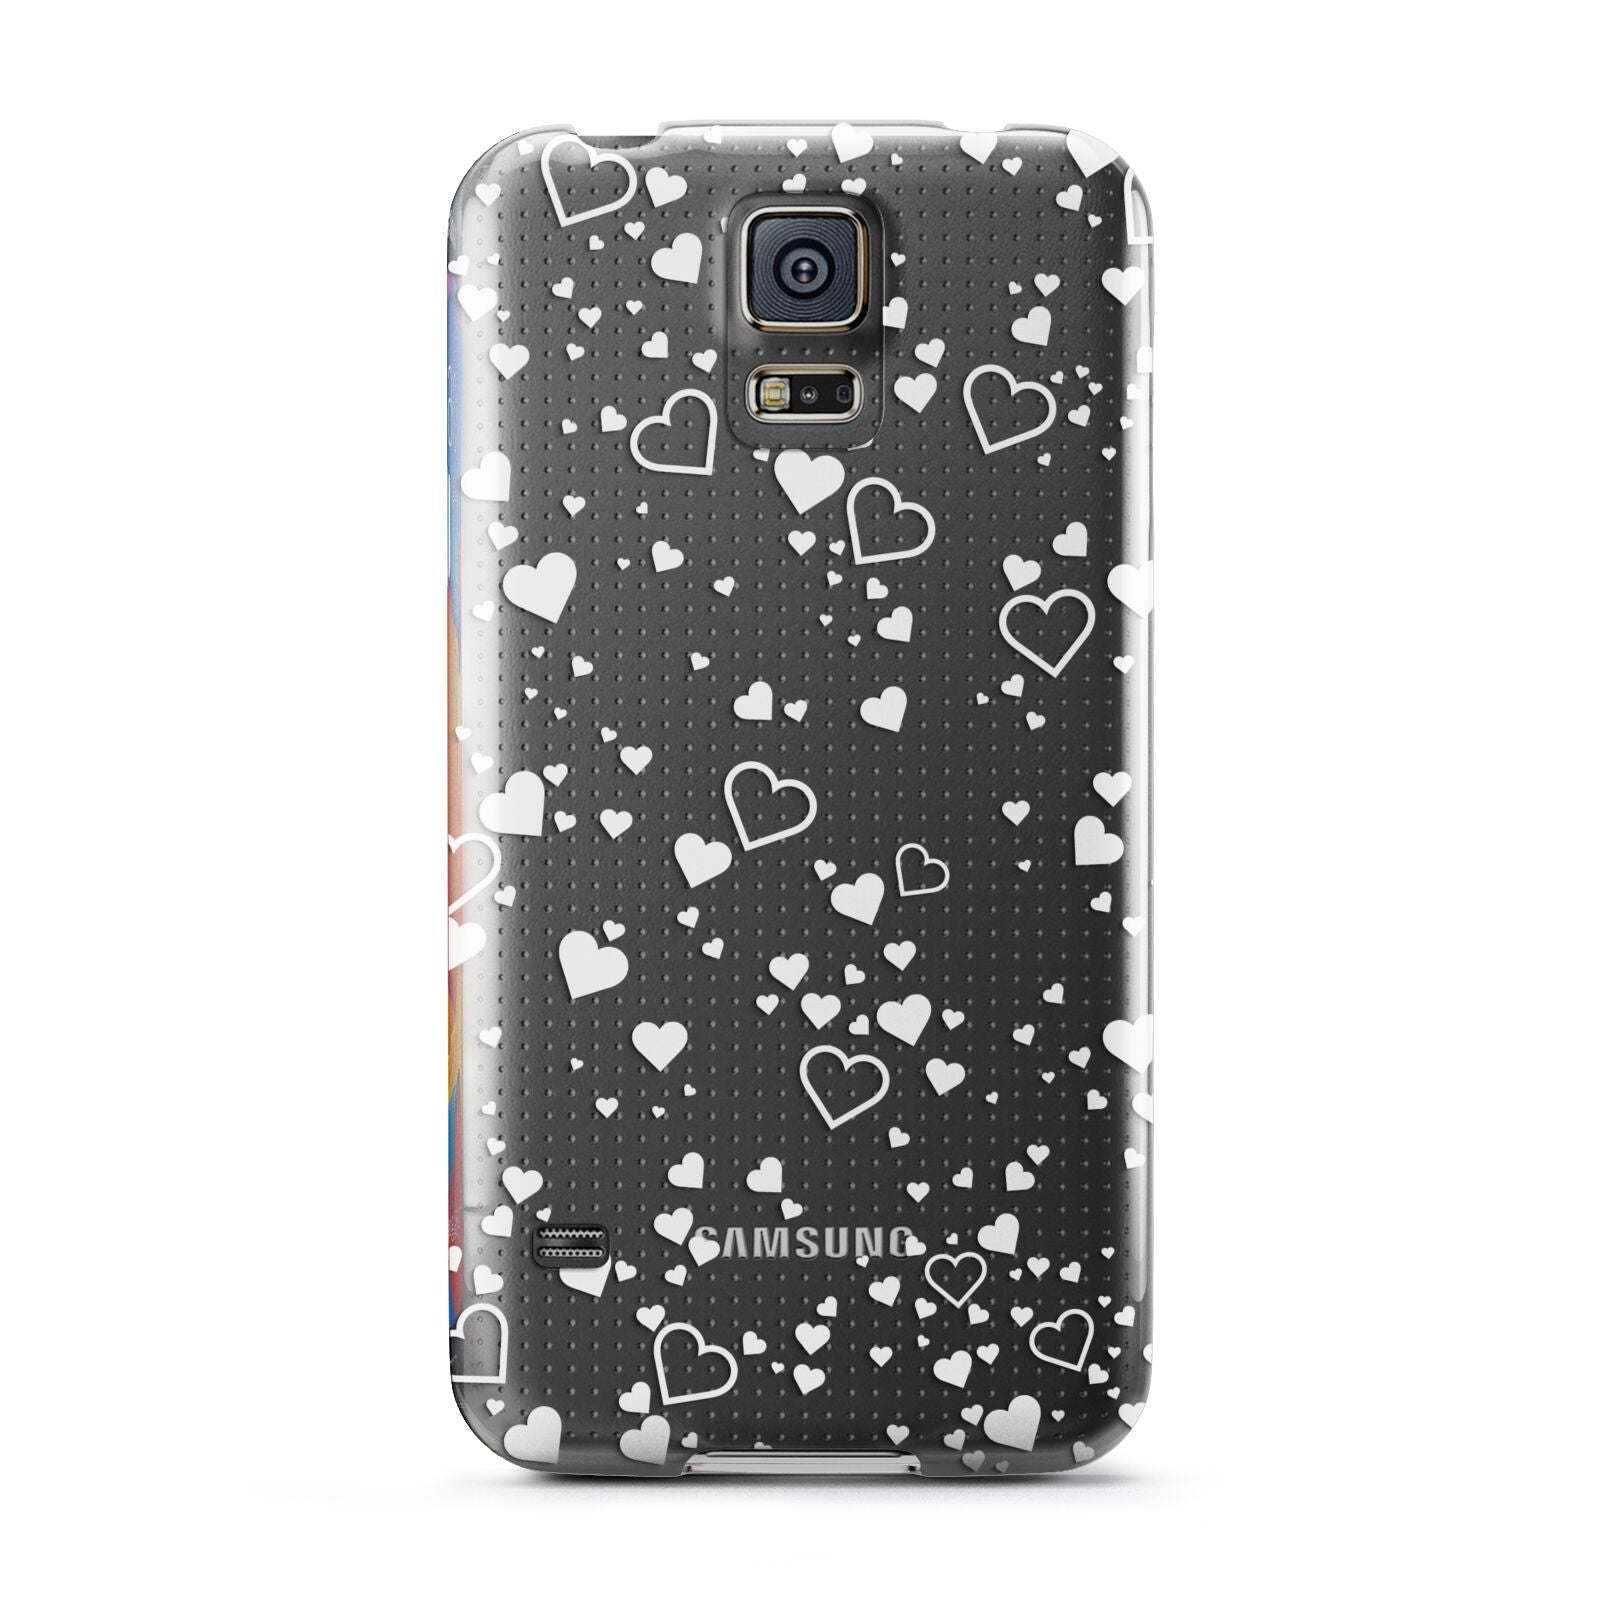 White Heart Samsung Galaxy S5 Case